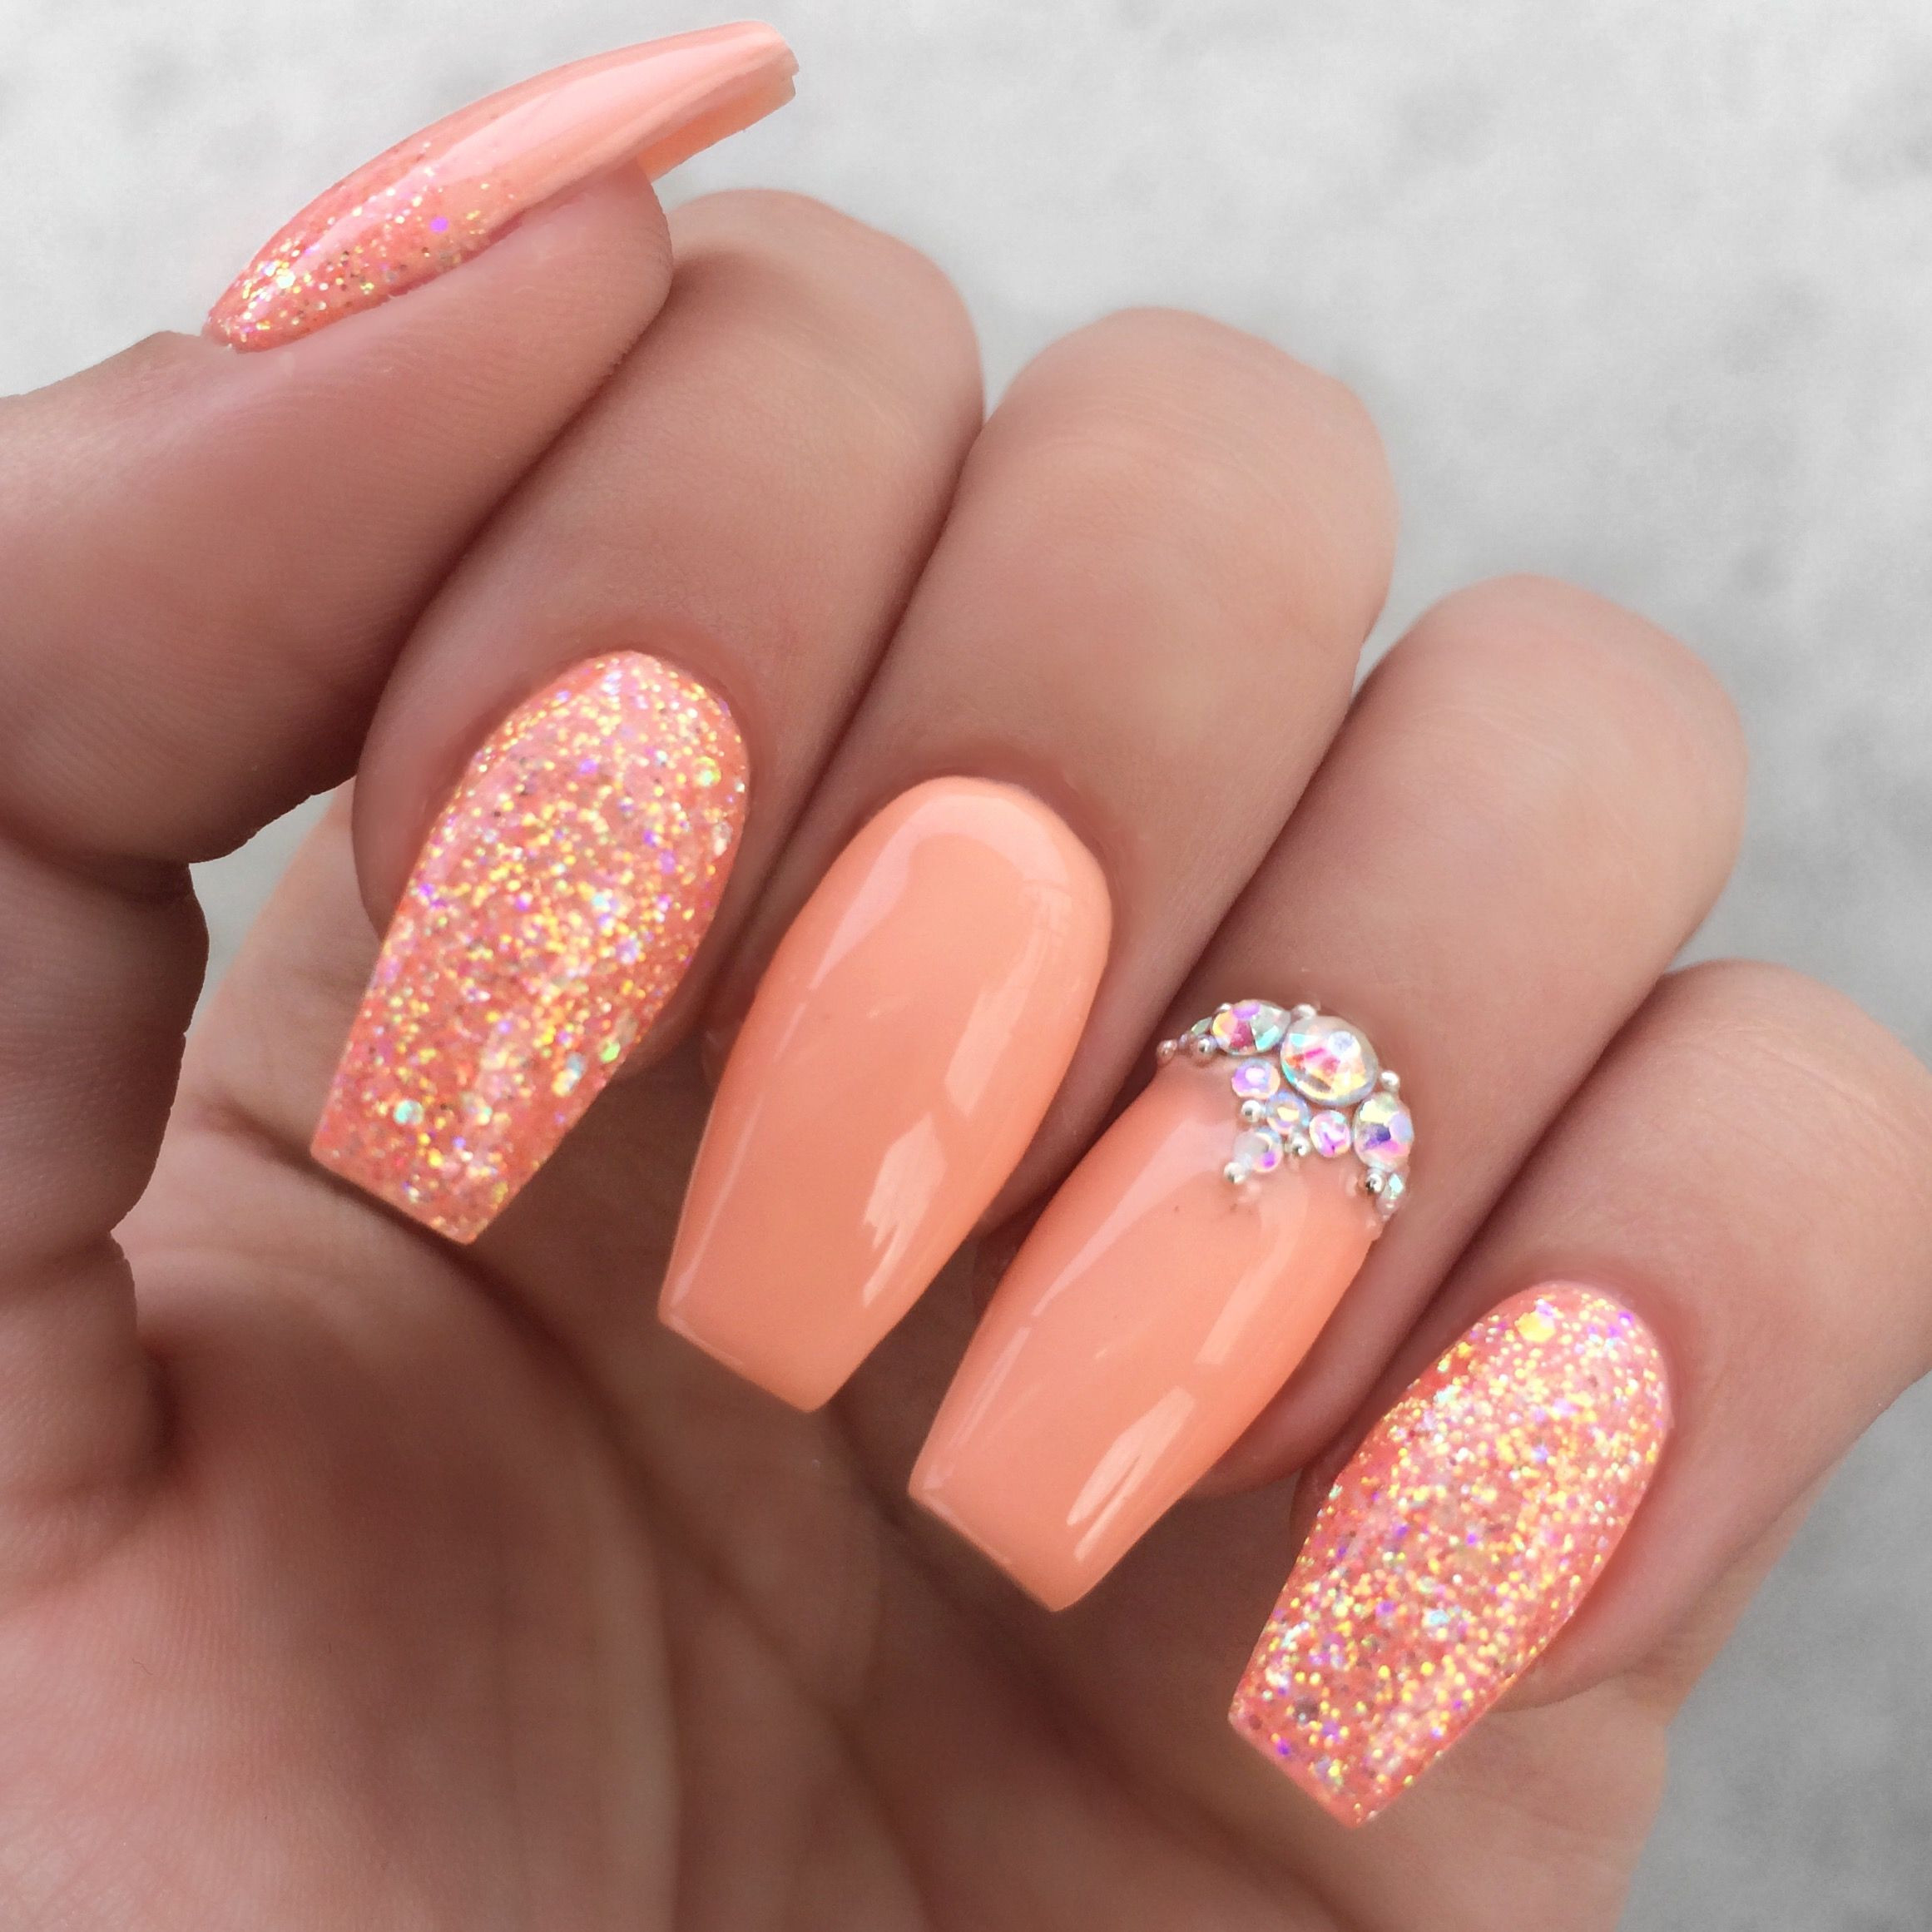 Peach Color Nail Designs
 Girly peach glitter rhinestone nails